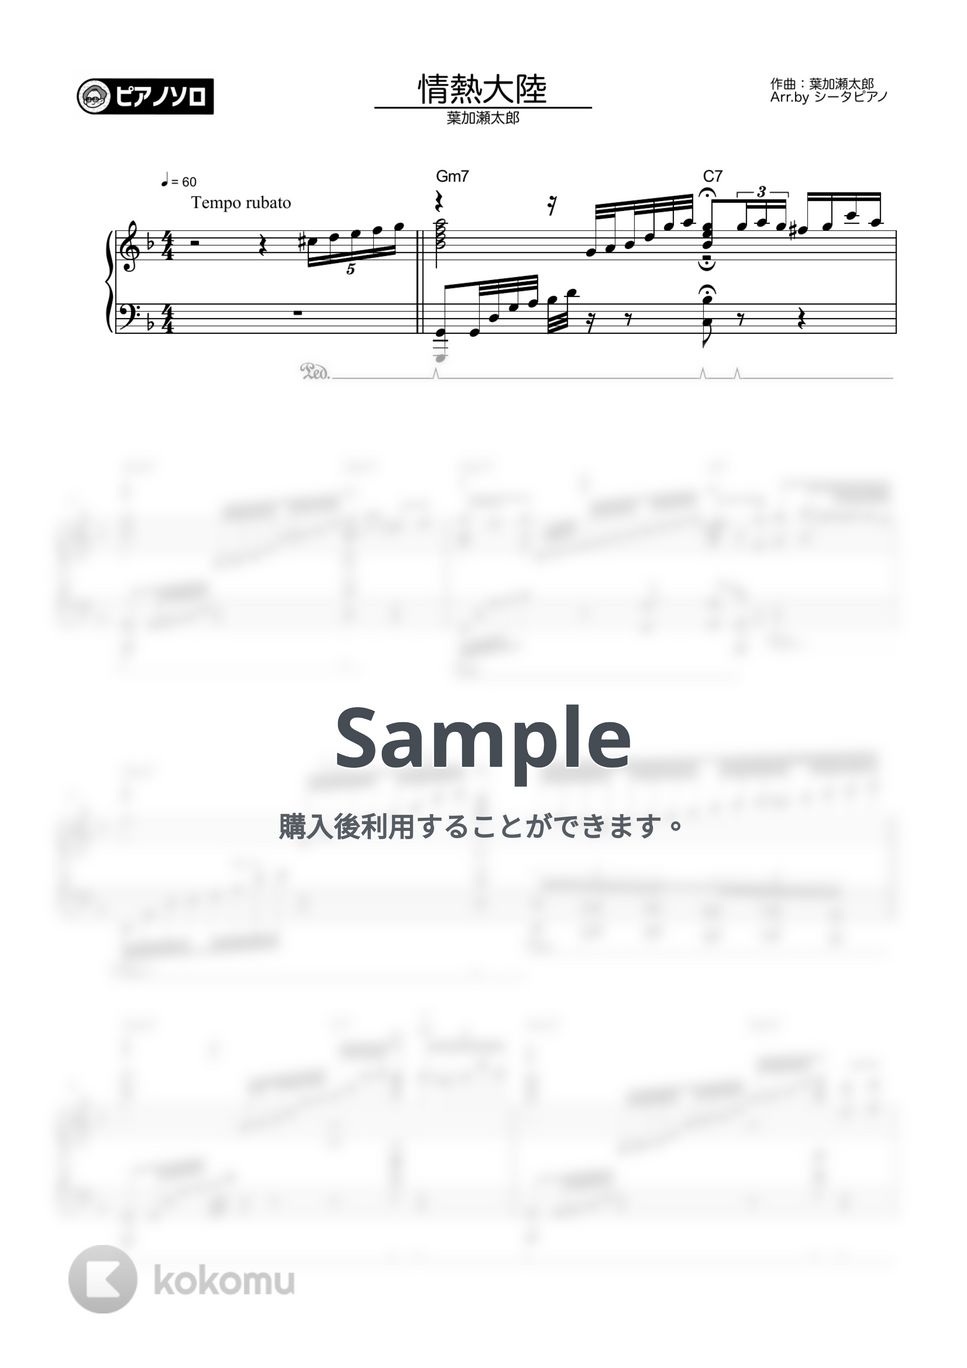 葉加瀬太郎 - 情熱大陸 by シータピアノ